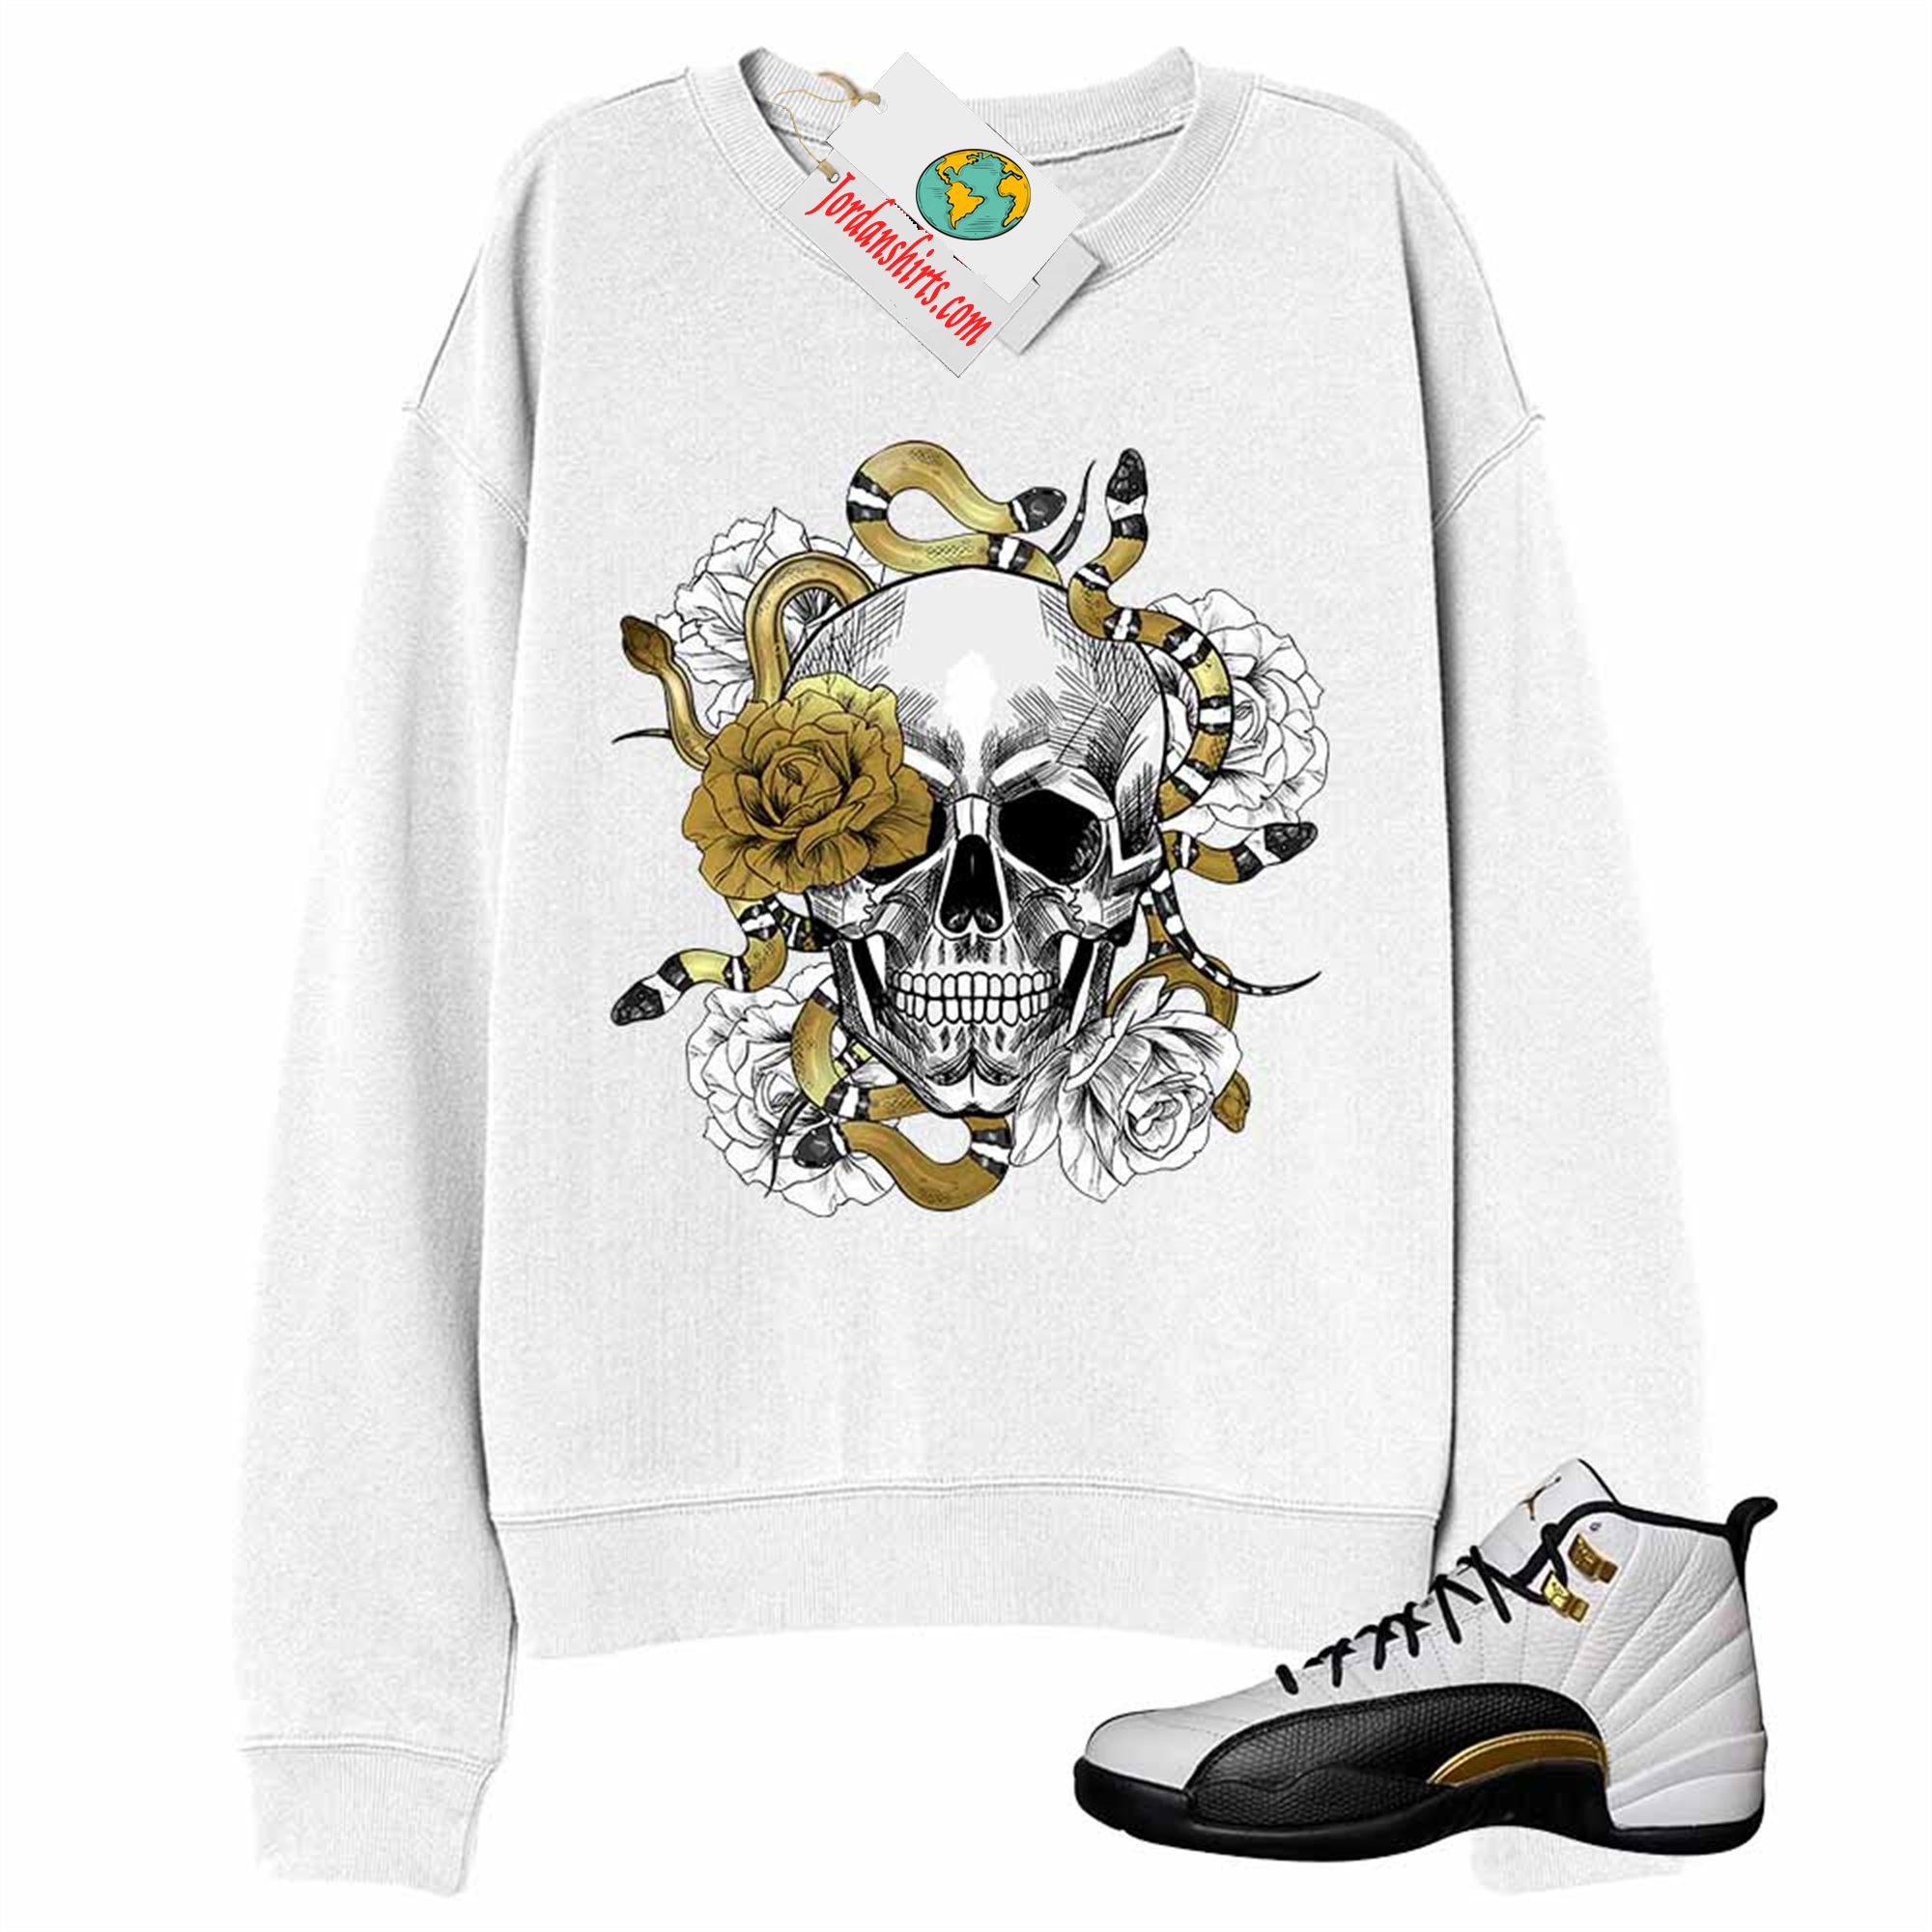 Jordan 12 Sweatshirt, Snake Skull Rose White Sweatshirt Air Jordan 12 Royalty 12s Size Up To 5xl